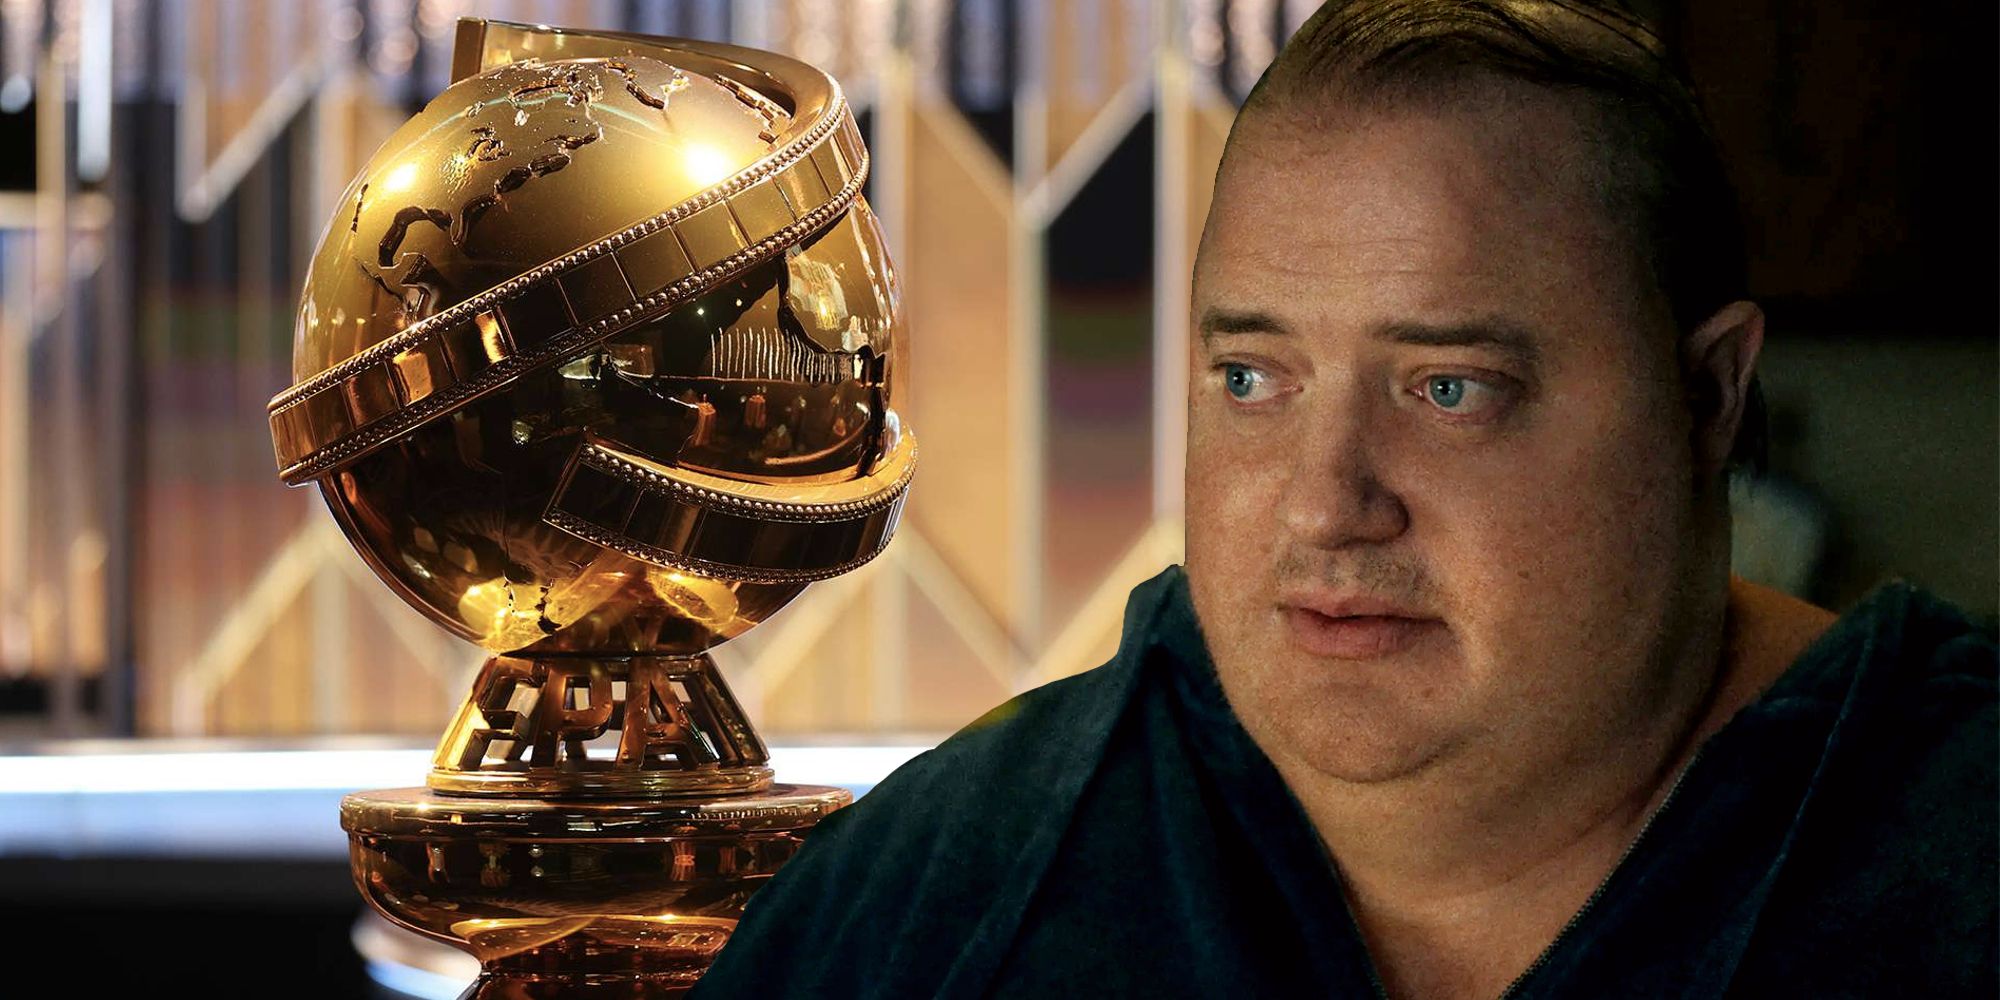 Un Golden Globe Award et Brendan Fraser dans The Whale juxtaposés dans une image personnalisée